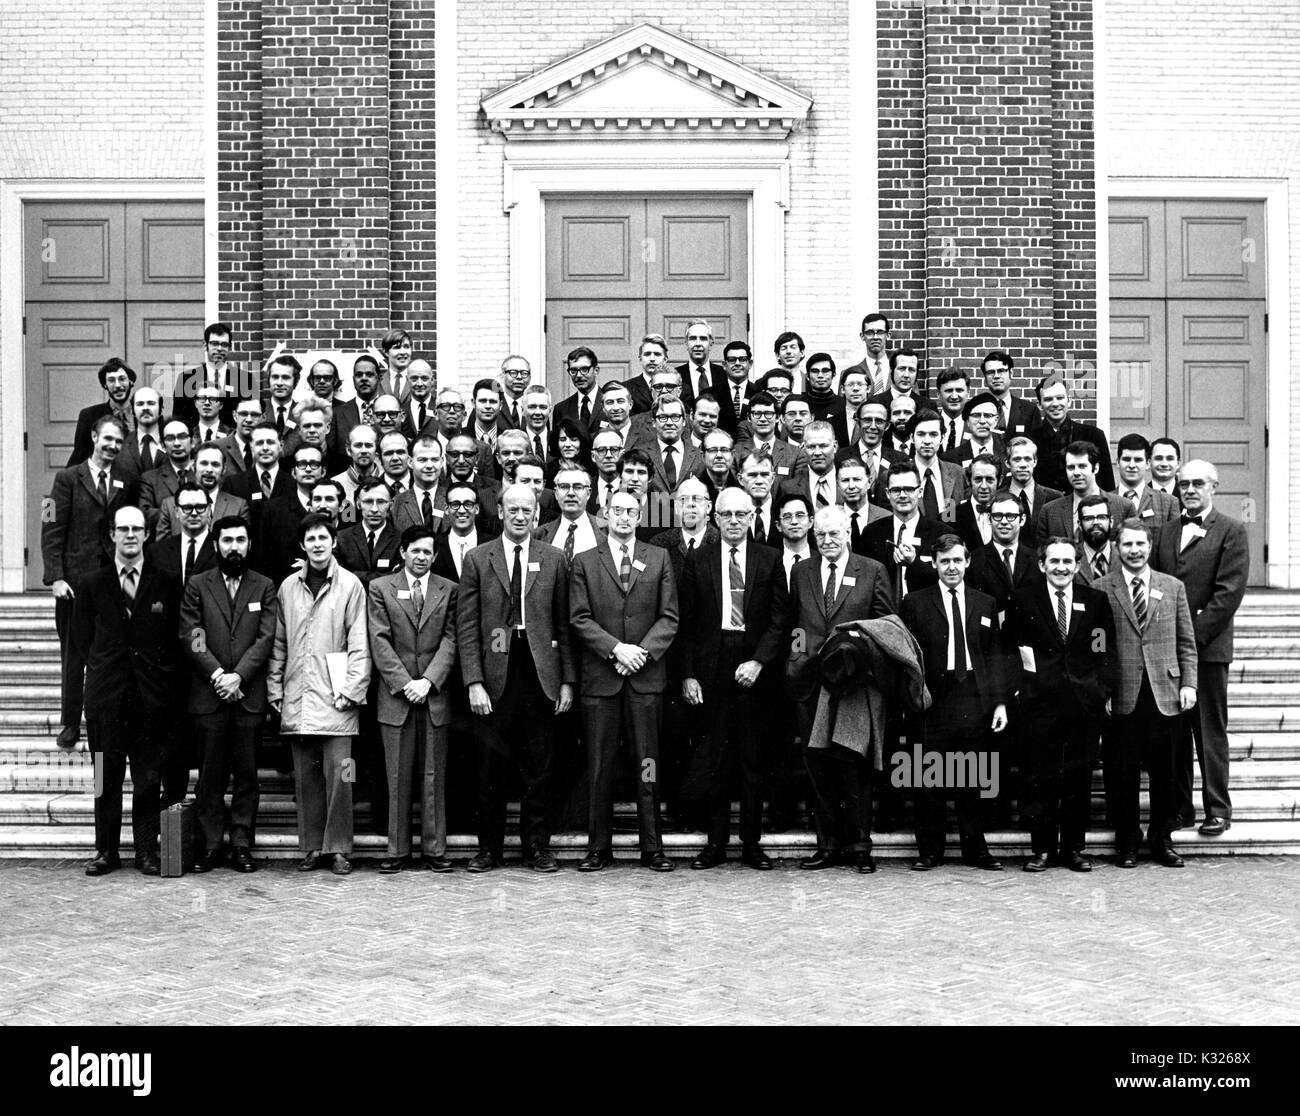 Auf der Konferenz edimentology in das 20. Jahrhundert' für Masse und planetarische Wissenschaft abgehalten an der Johns Hopkins University, Dutzende von männlichen Teilnehmer tragen Anzüge zusammen für ein Gruppenfoto auf den Stufen vor der Shriver Hall, ein Auditorium auf dem Campus, Baltimore, Maryland, 1971 darstellen. Stockfoto